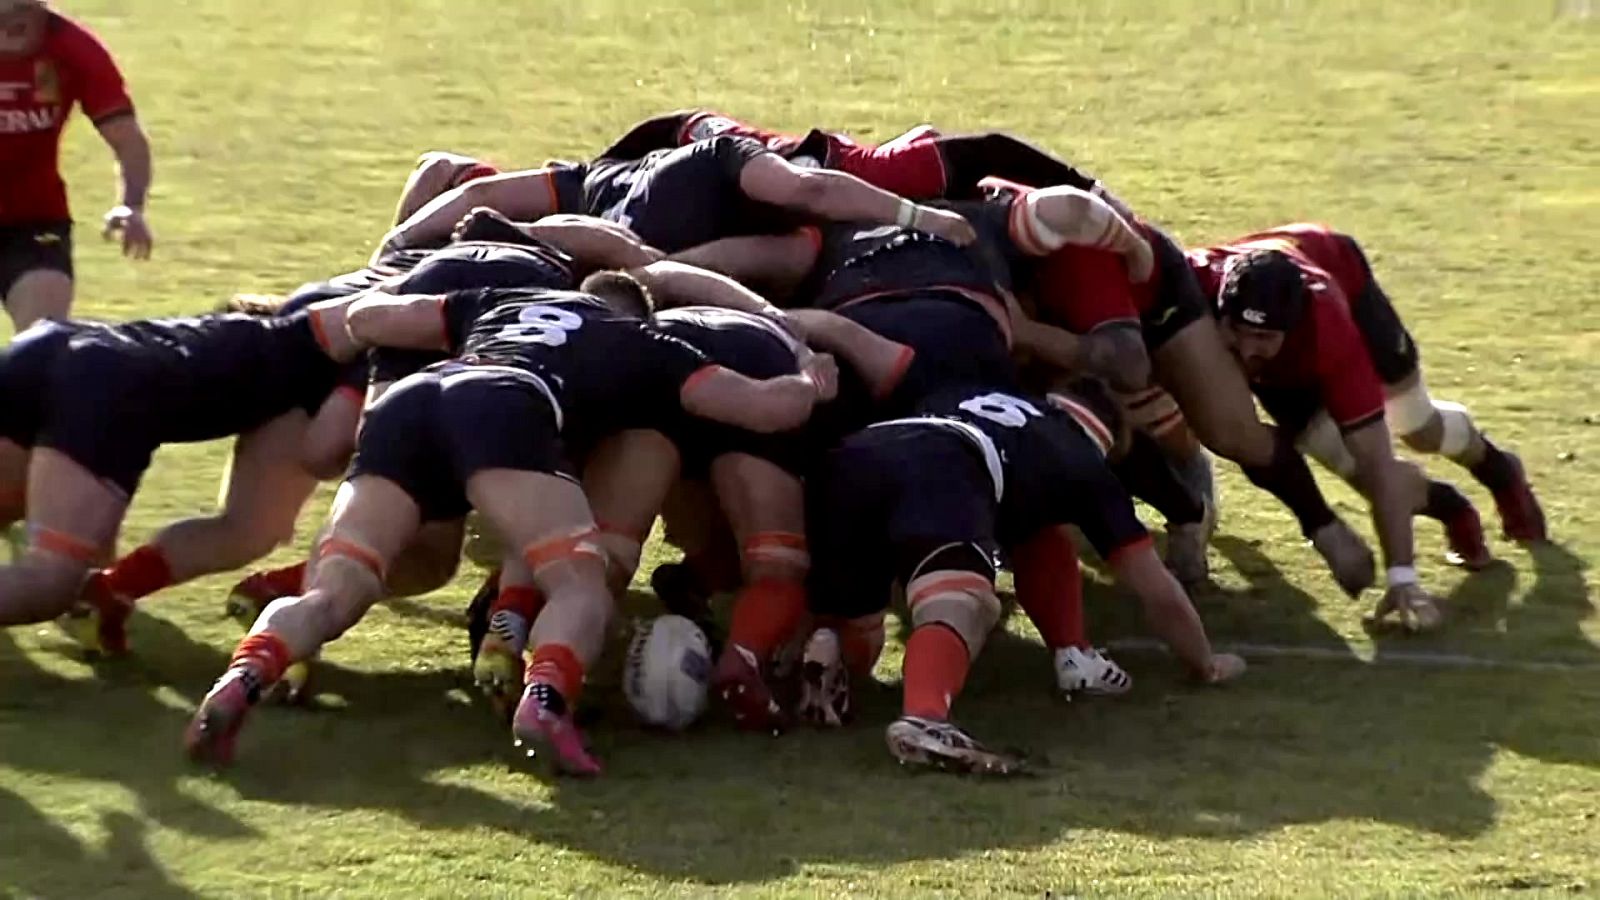 Rugby - Campeonato de Europa masculino: España - Países Bajos - ver ahora